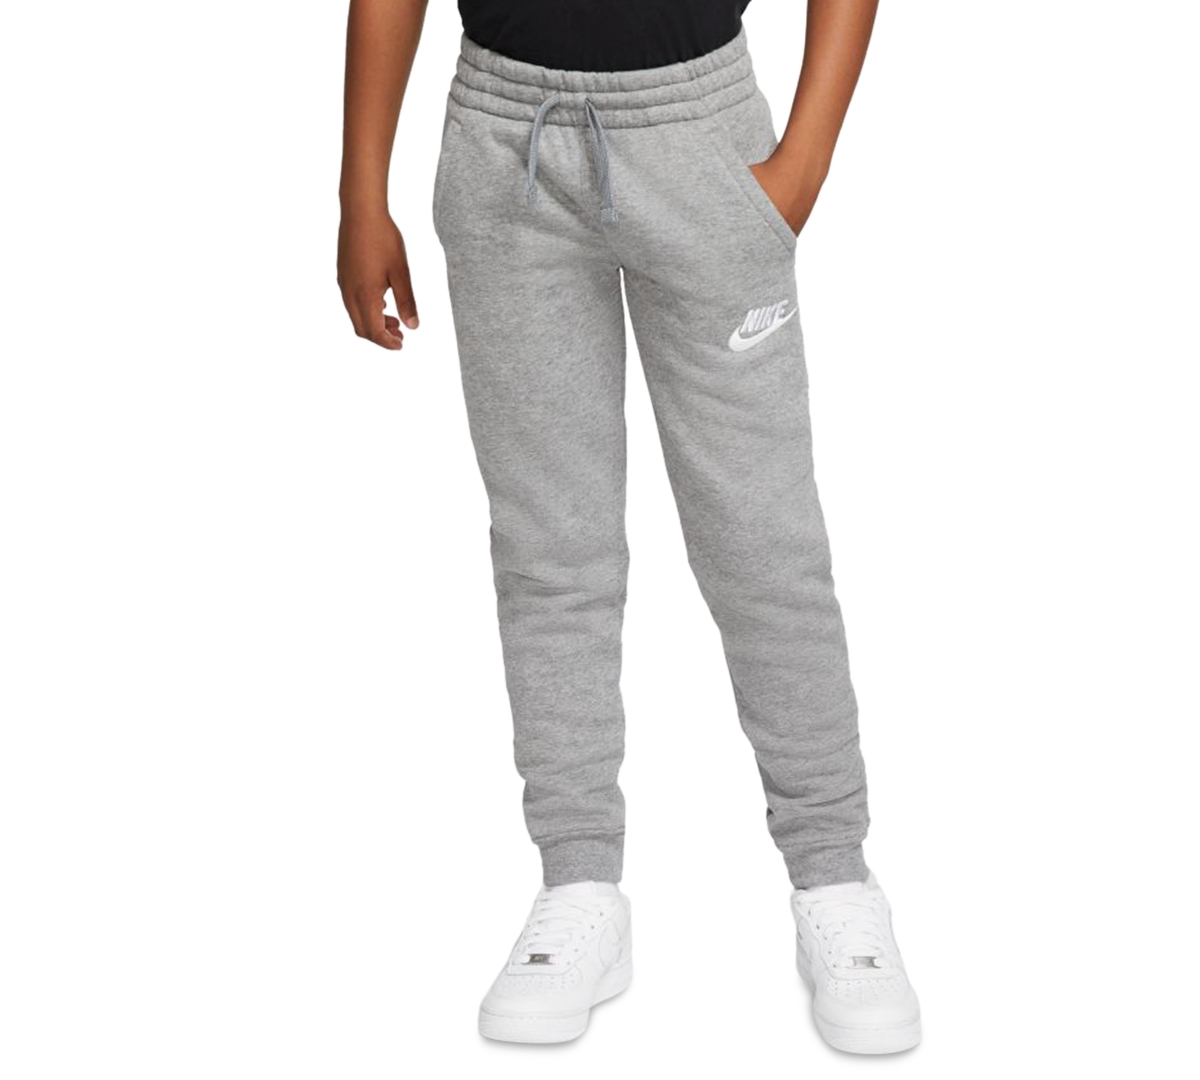 UPC 192501025047 product image for Nike Big Boys Fleece Jogger Pants | upcitemdb.com